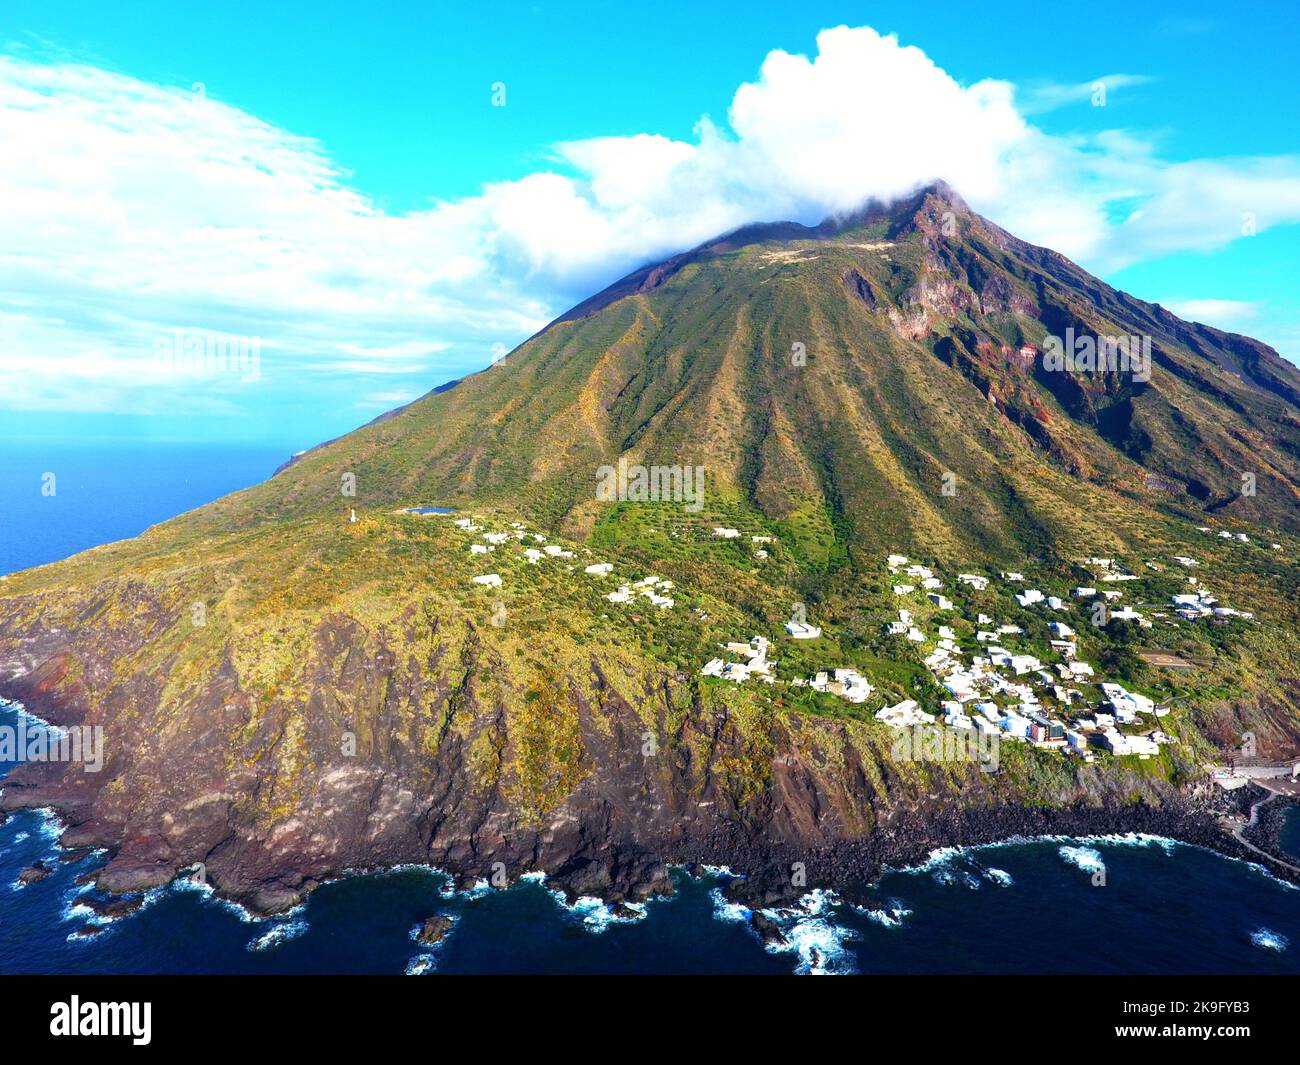 Isola di Stromboli. Stock Photo